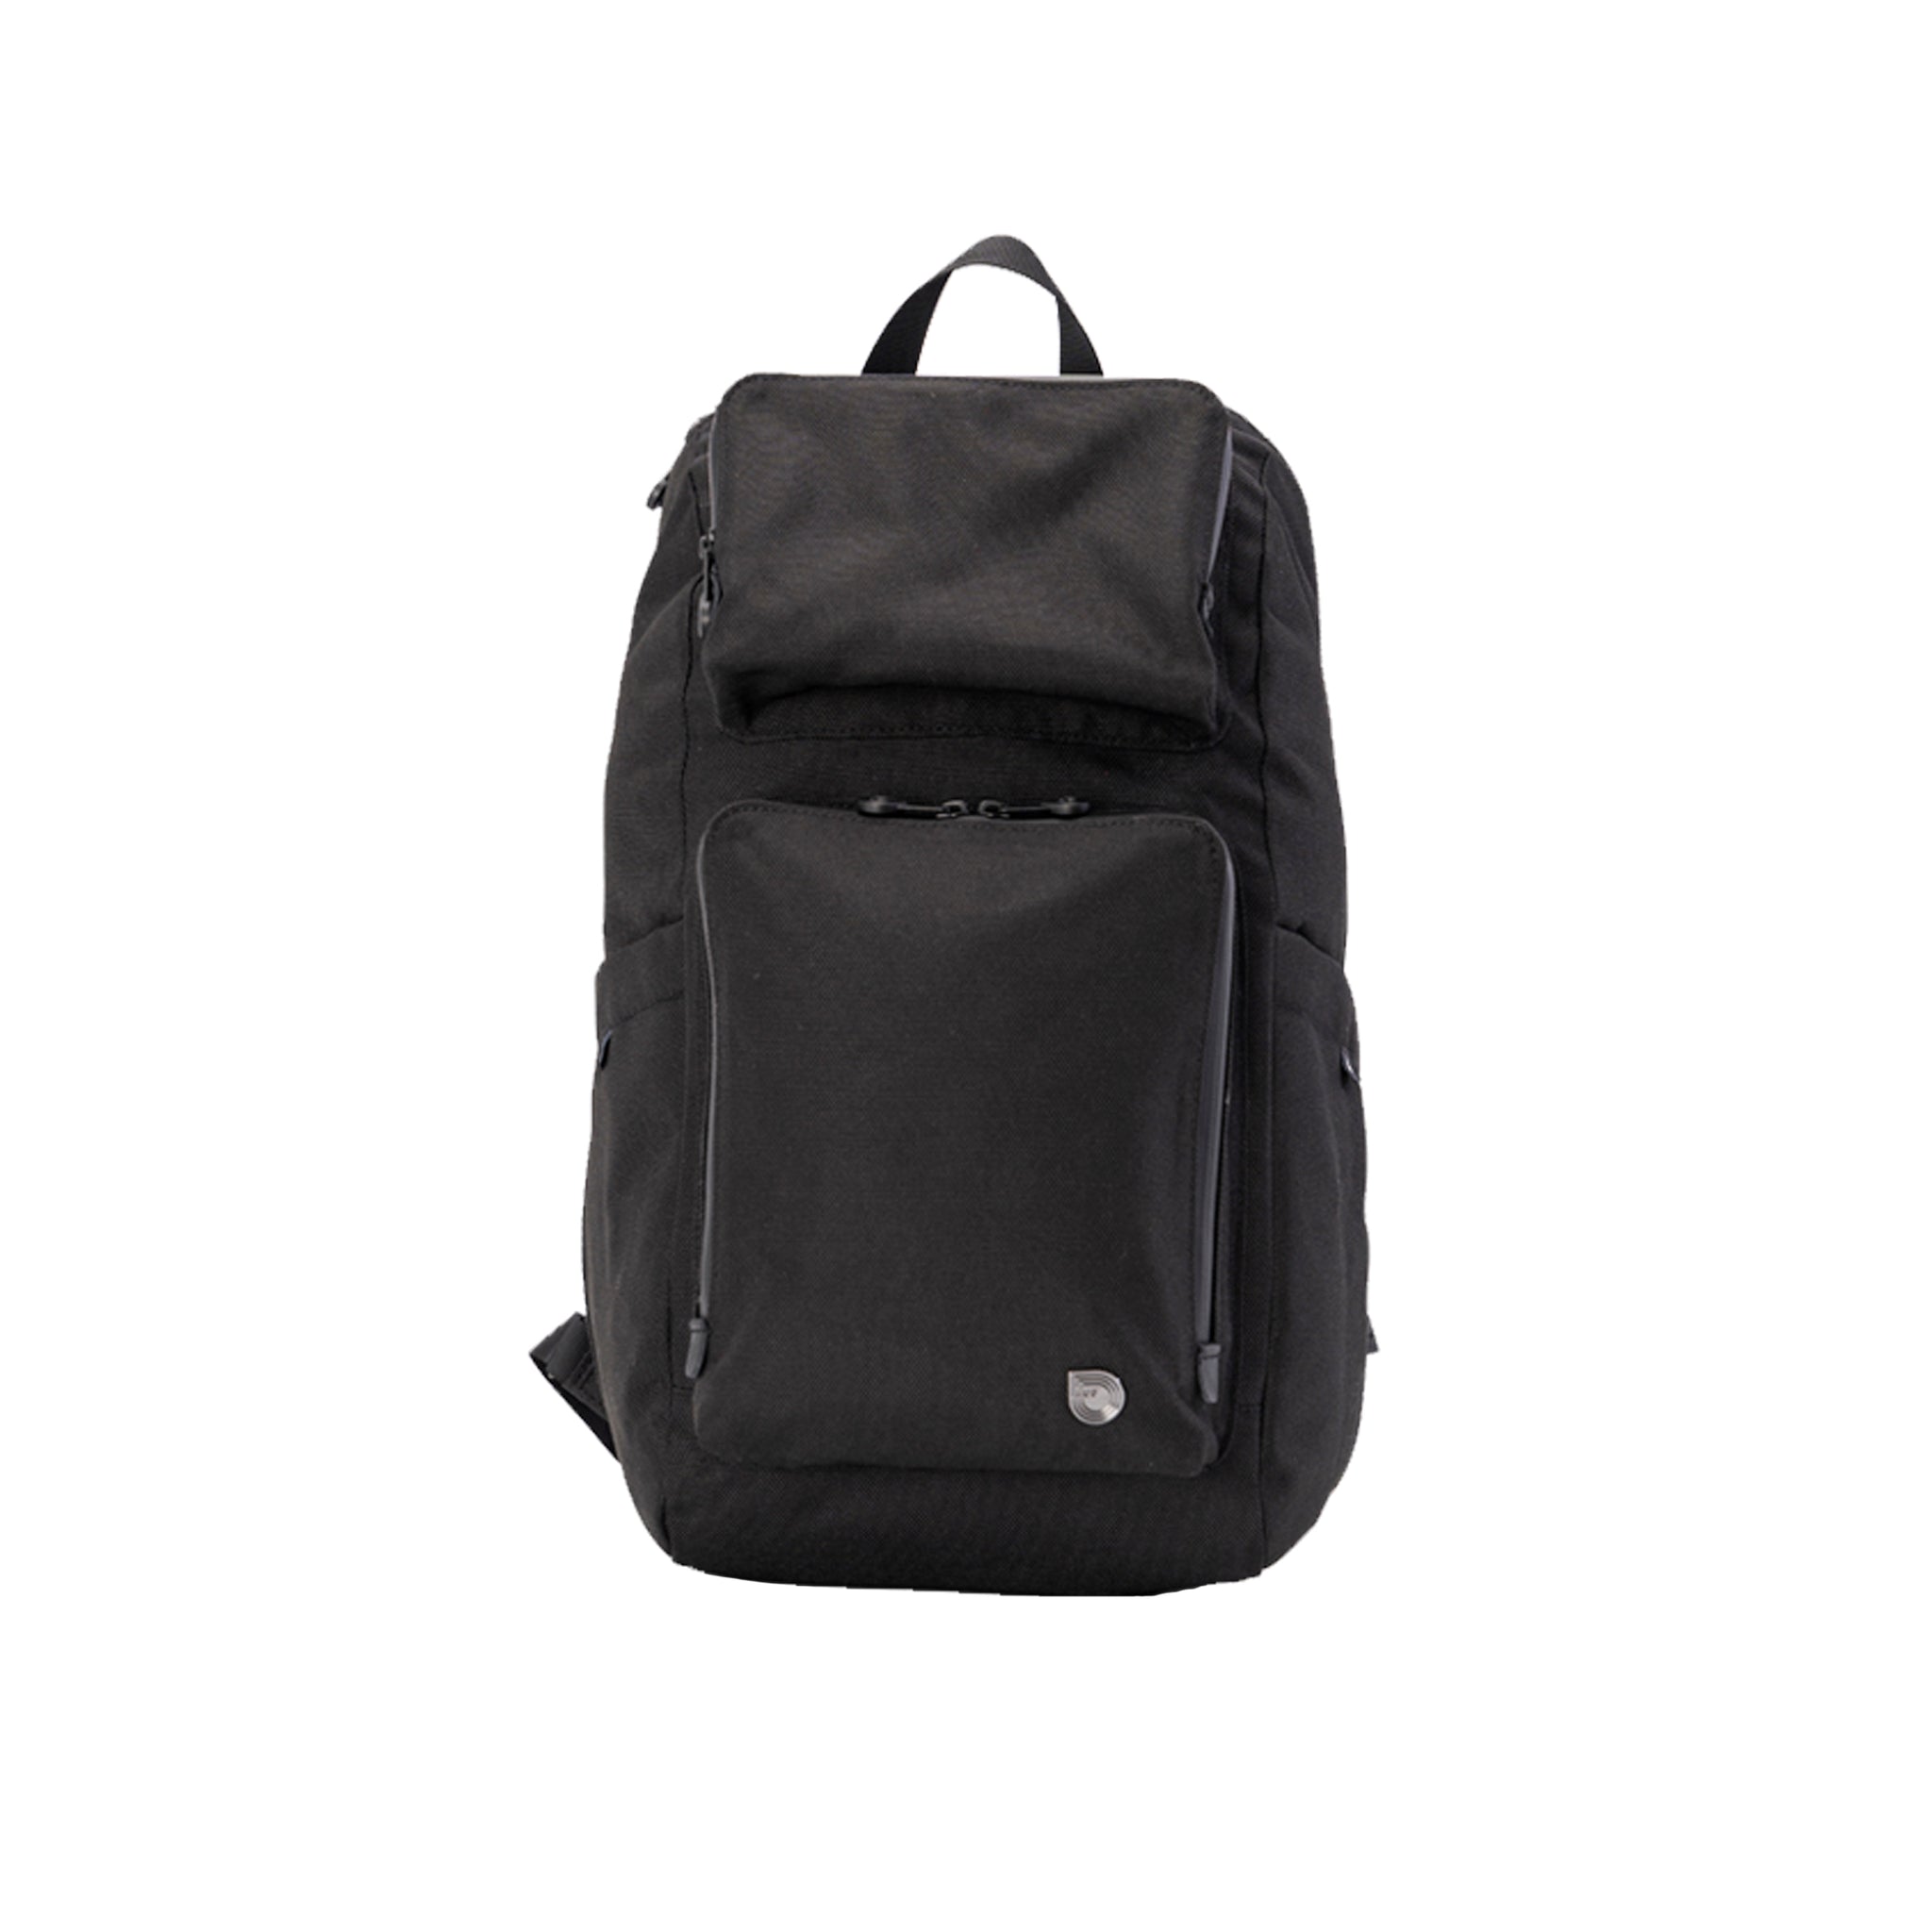 MUB Bibi Mini - Black Pearl Multi-functional Bag for Men